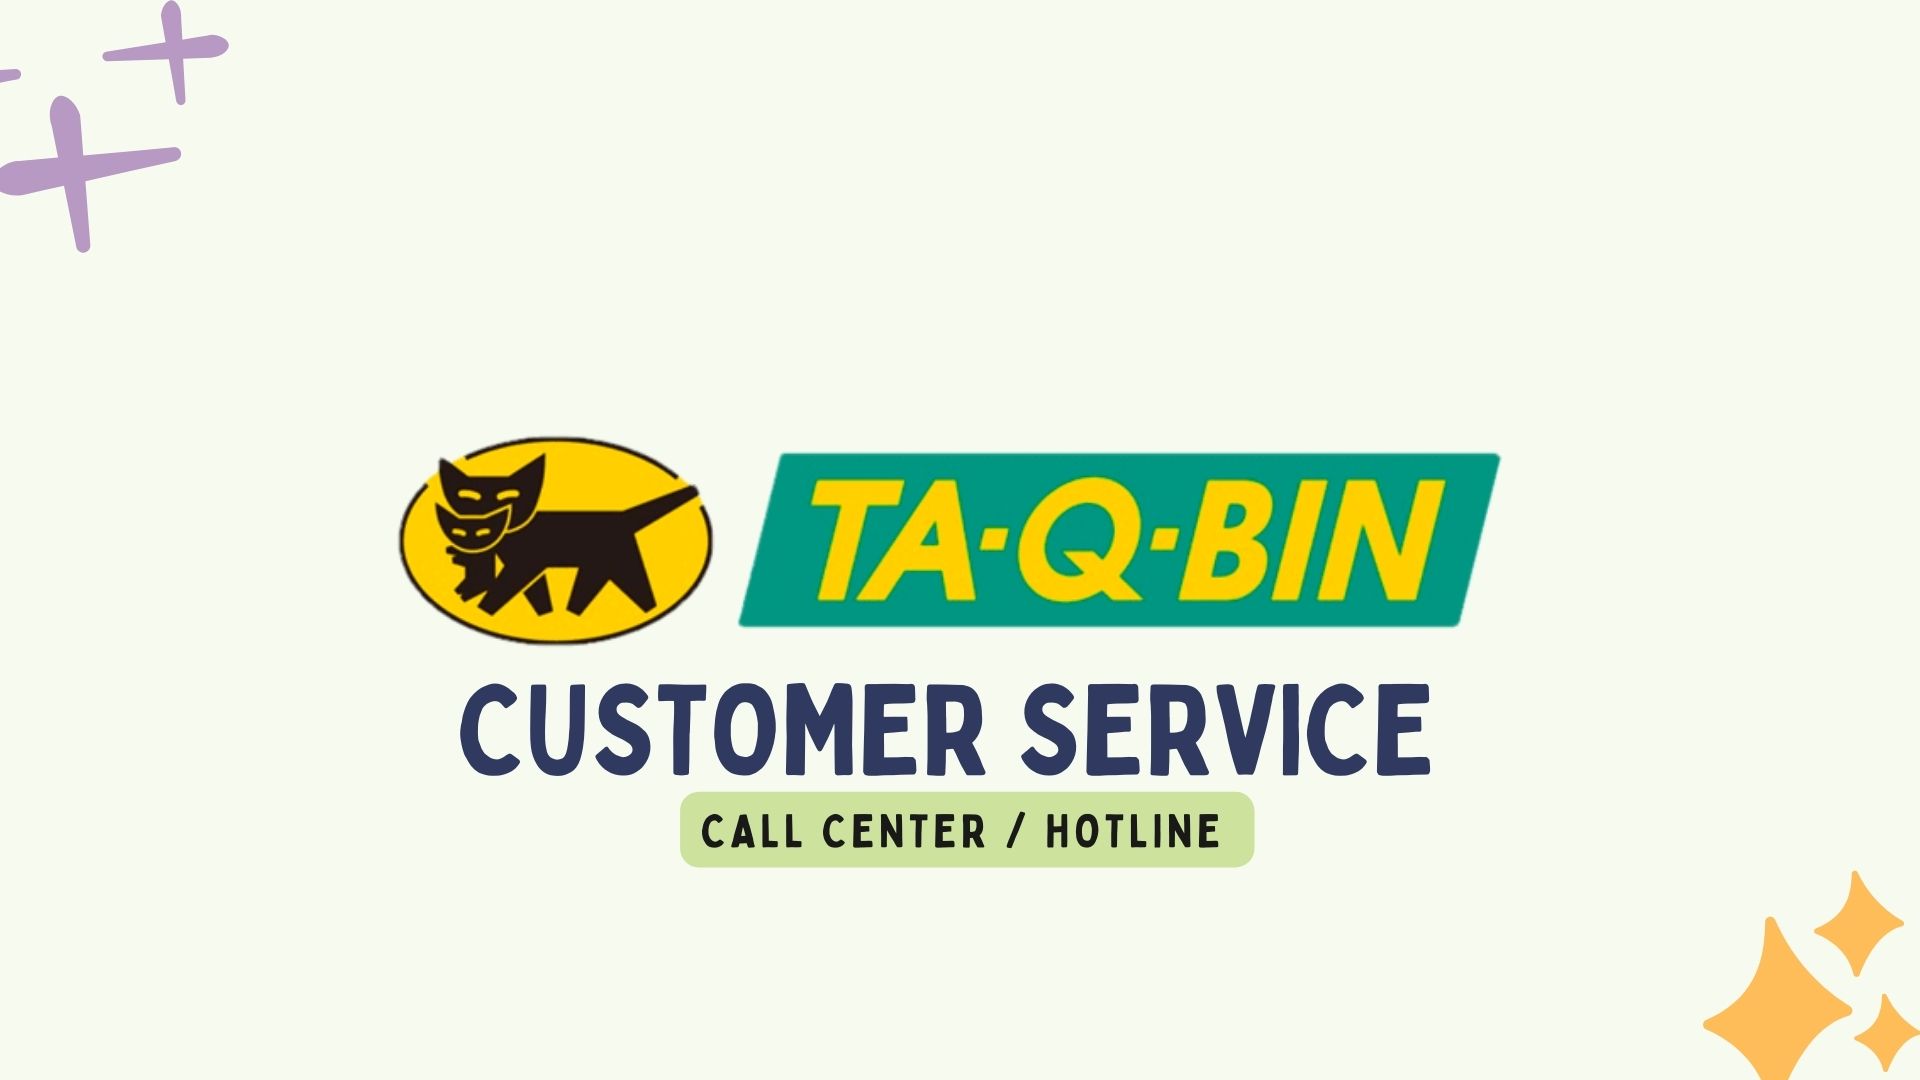 TA Q BIN Customer Service